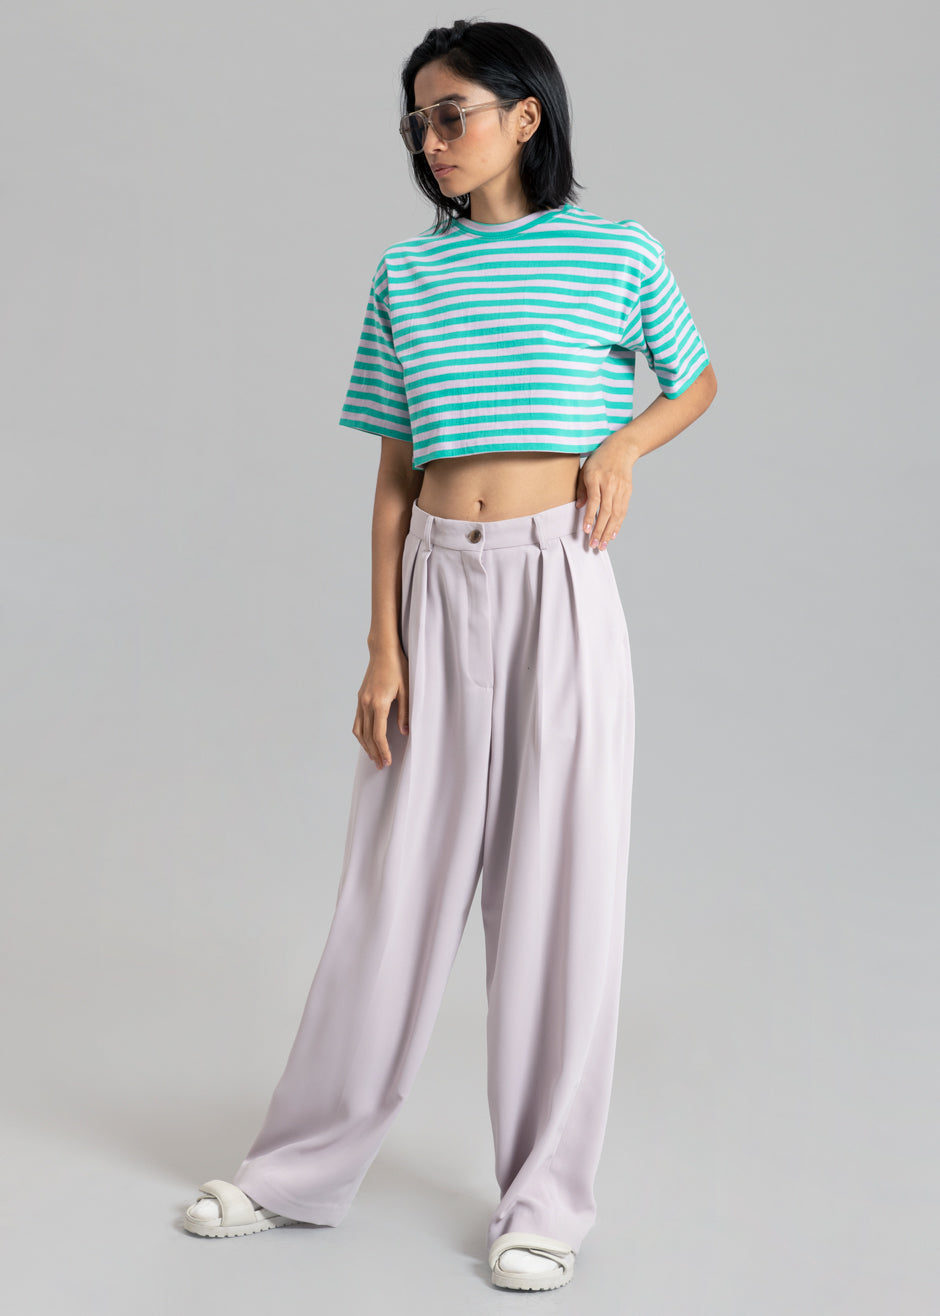 Karina Cropped T-Shirt - Sea Green/Lilac - 6